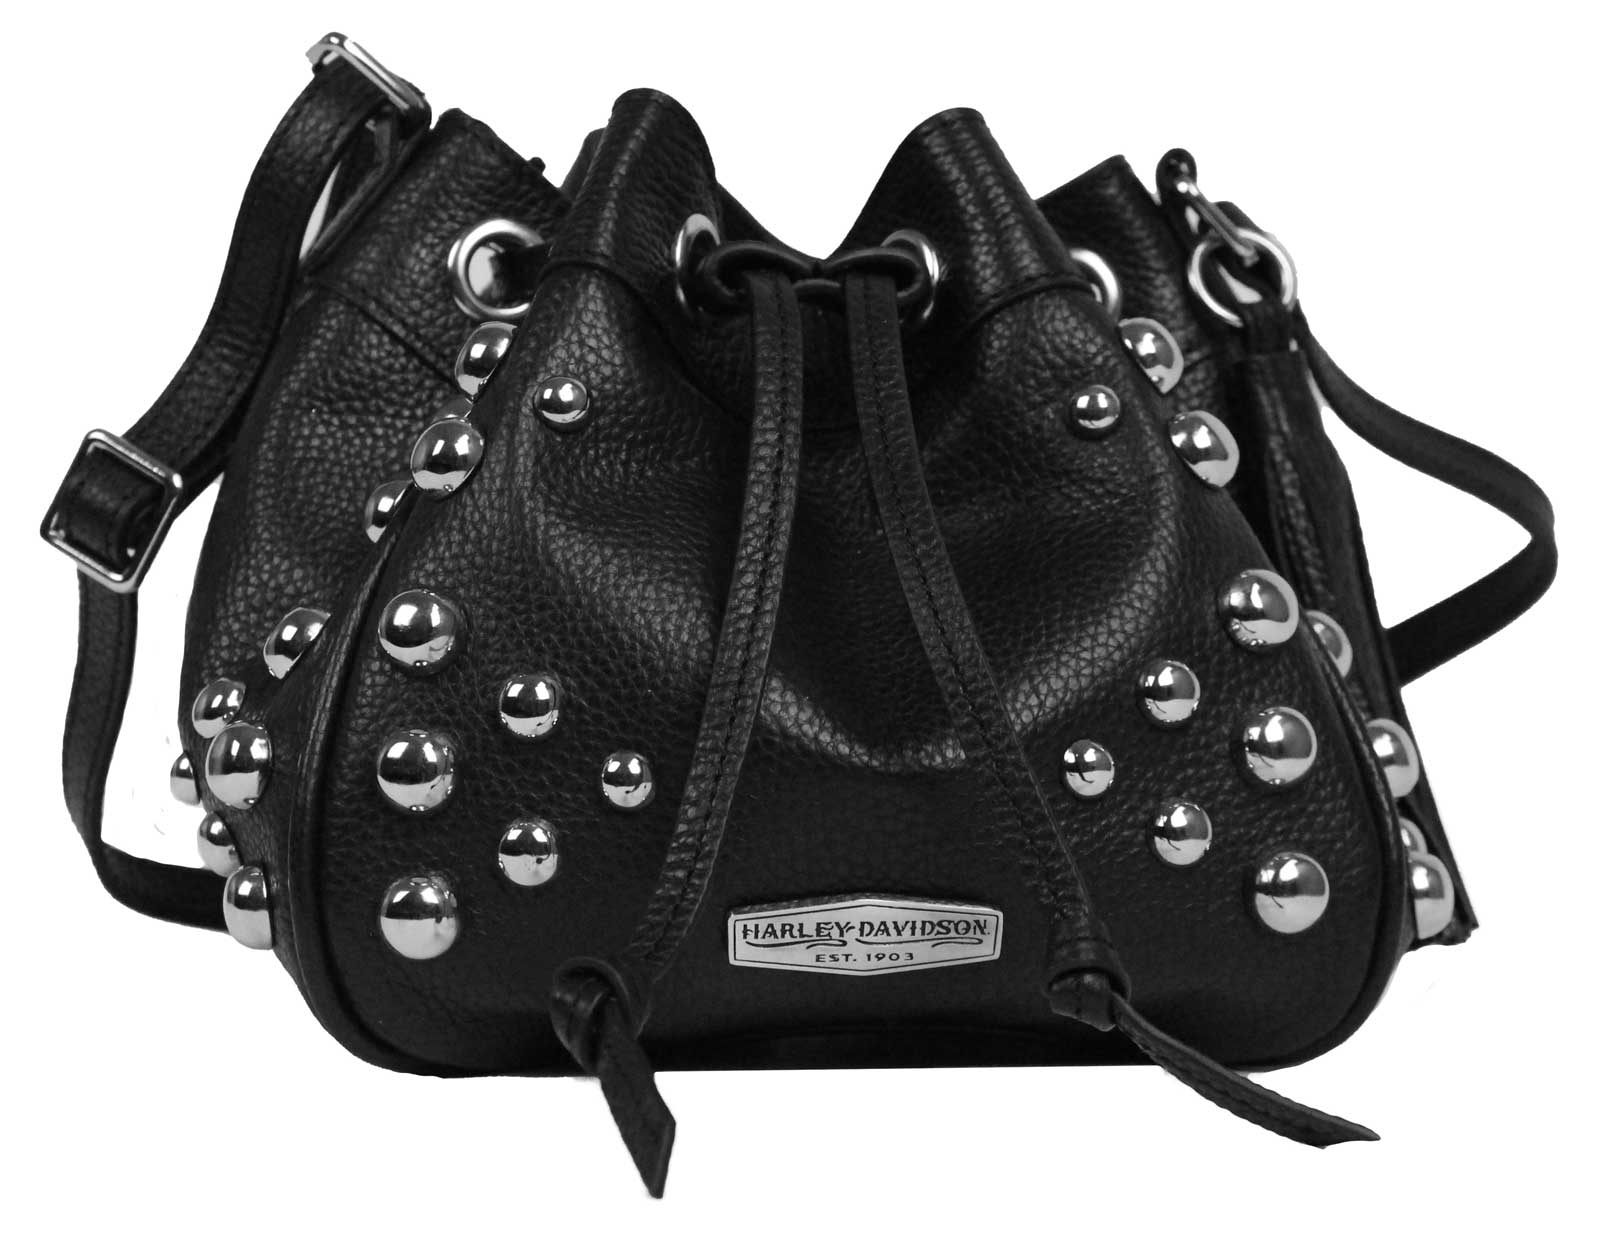 SALE Official Harley Davidson Black Leather Handbag With 